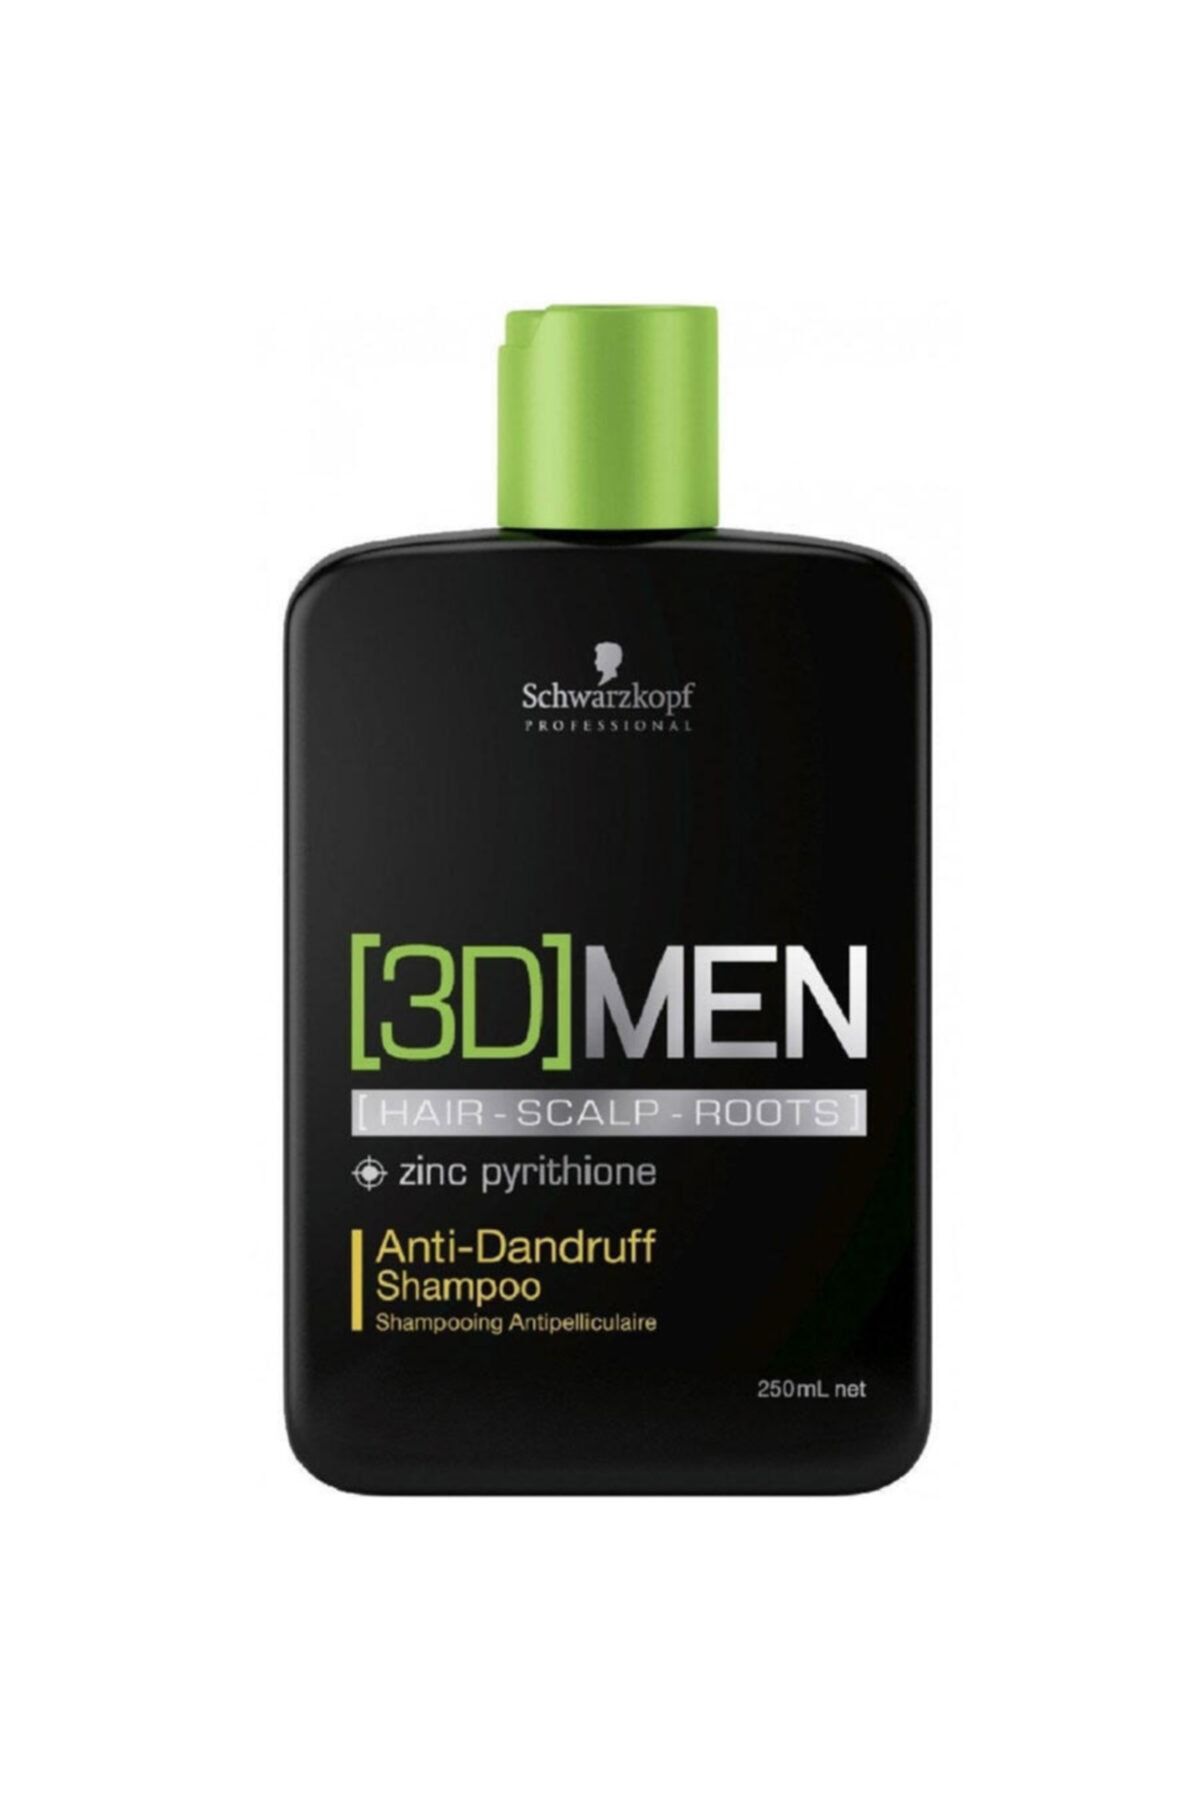 3D Mension Erkekler Için Kepeğe Karşı Şampuan - Anti Dandruff Shampoo 250 ml